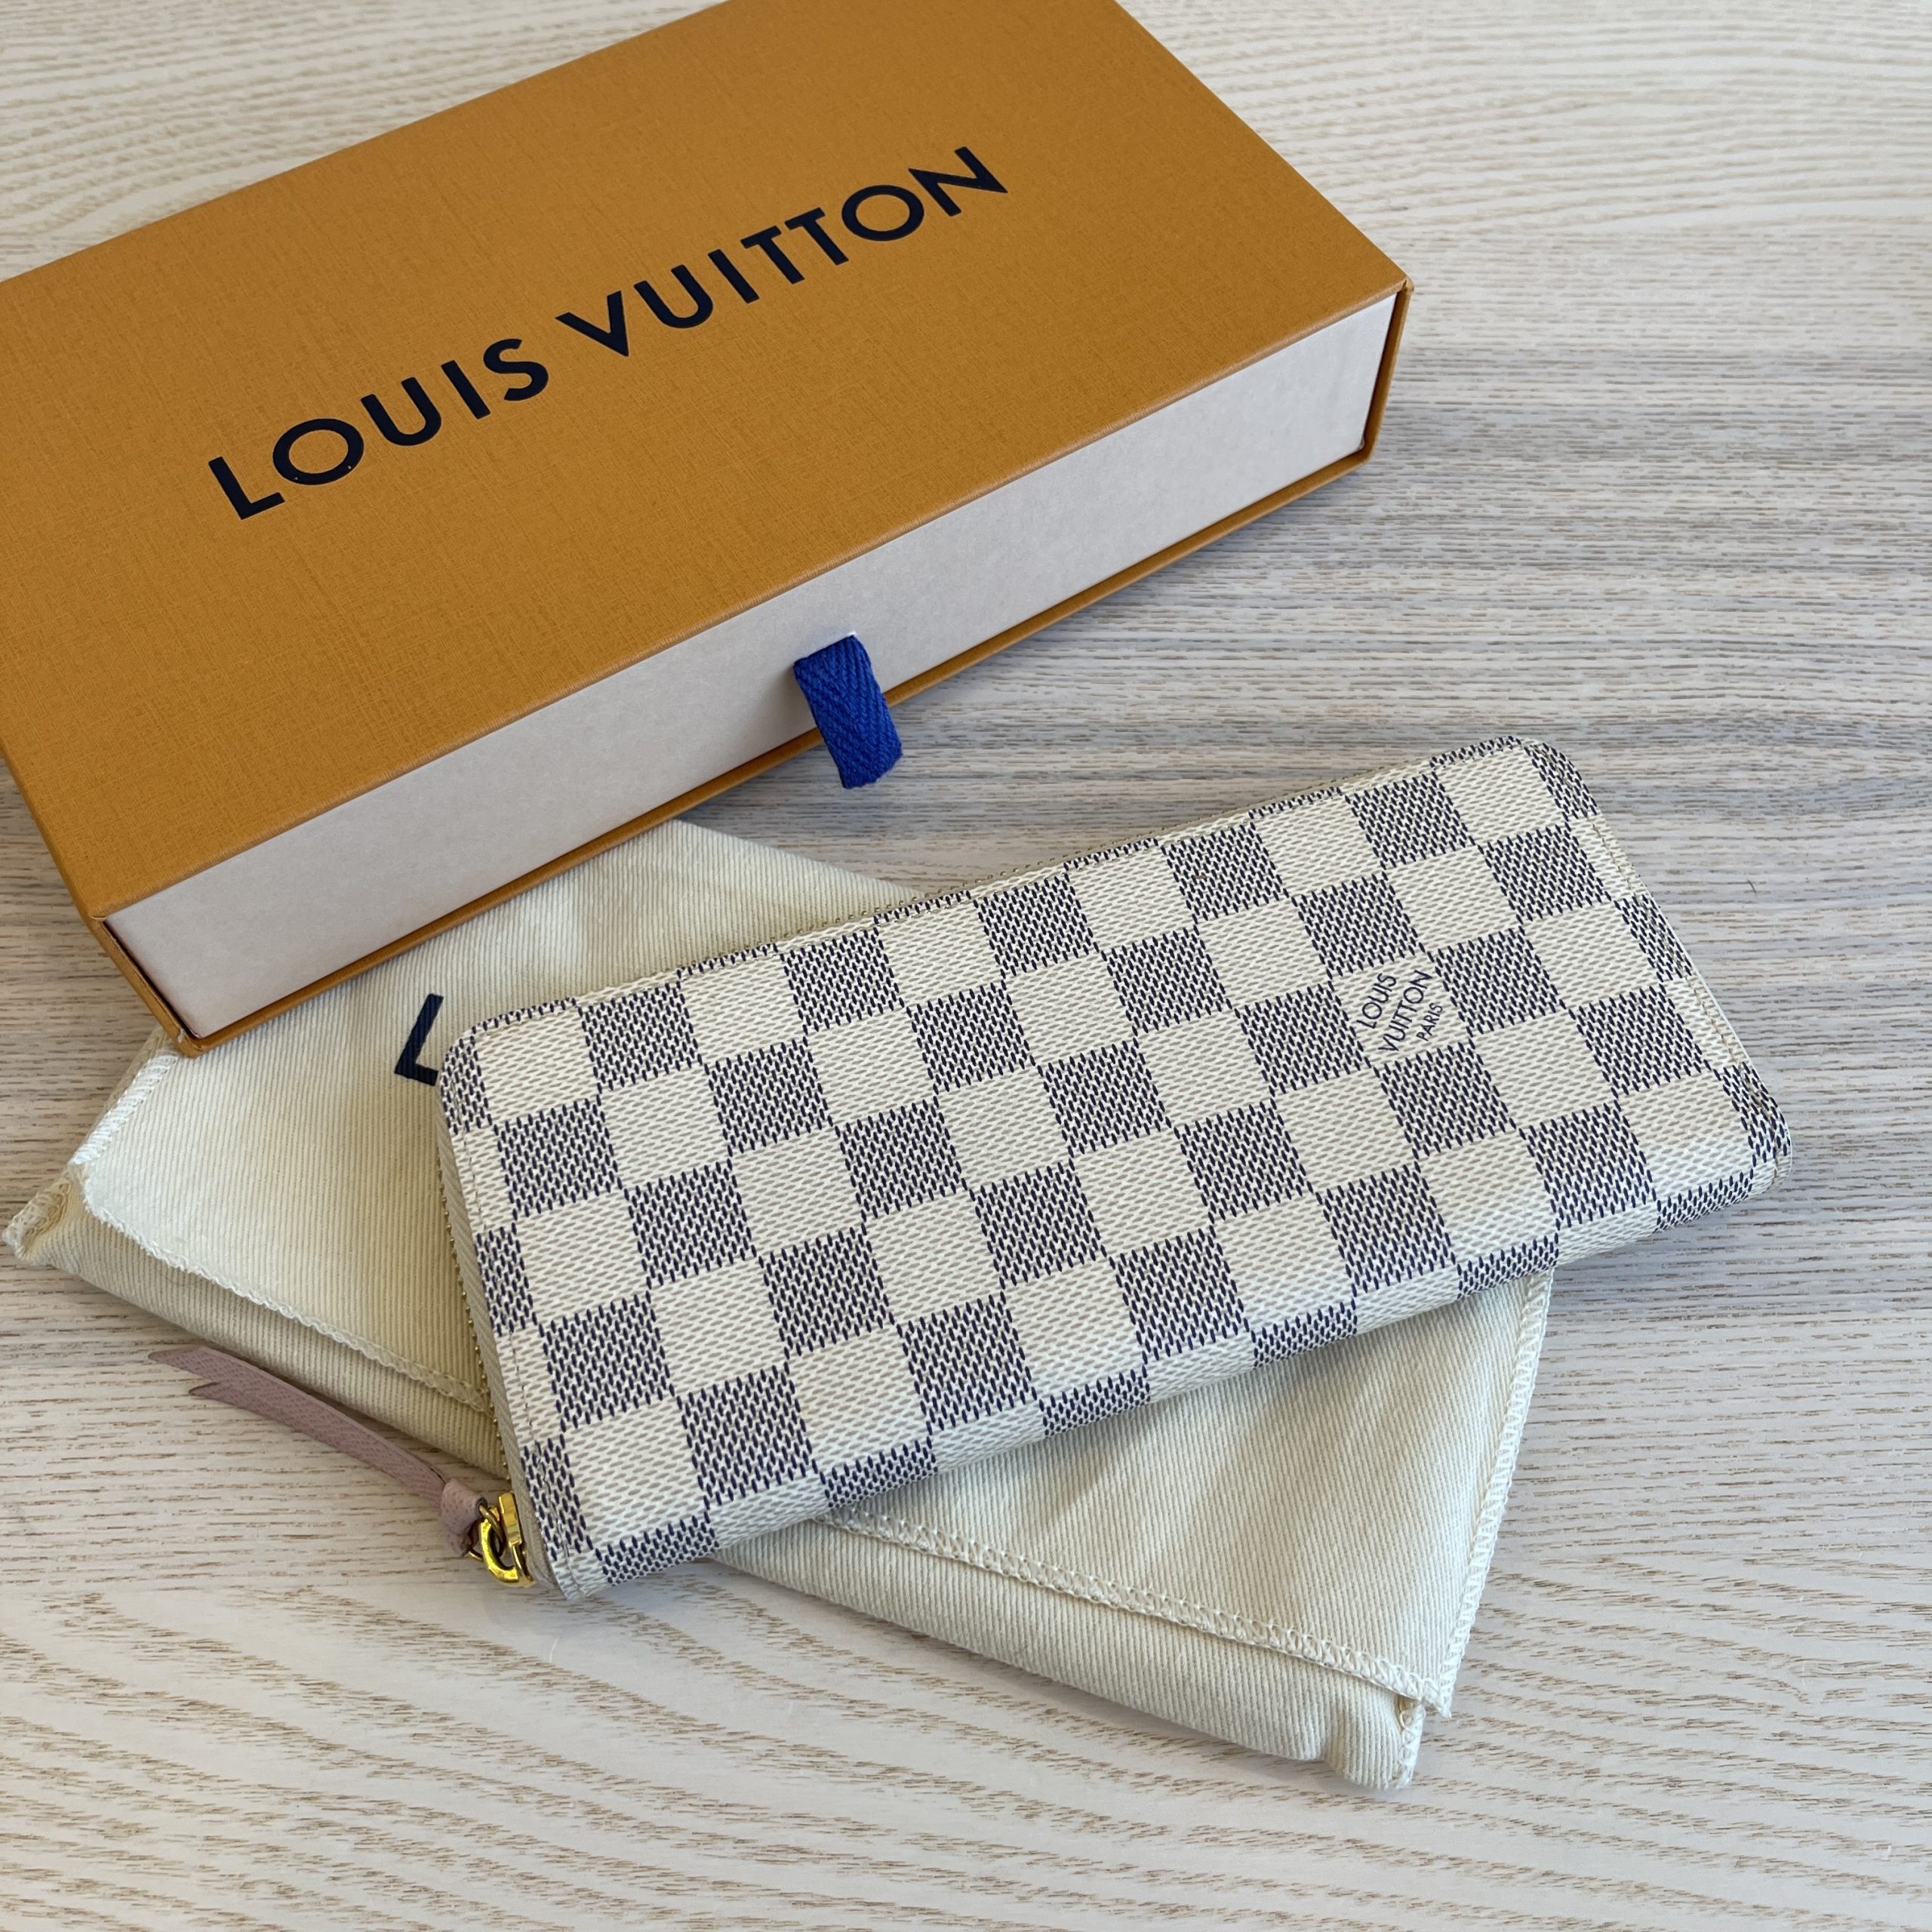 How to Spot Authentic Louis Vuitton Clemence Damier Azur Wallet